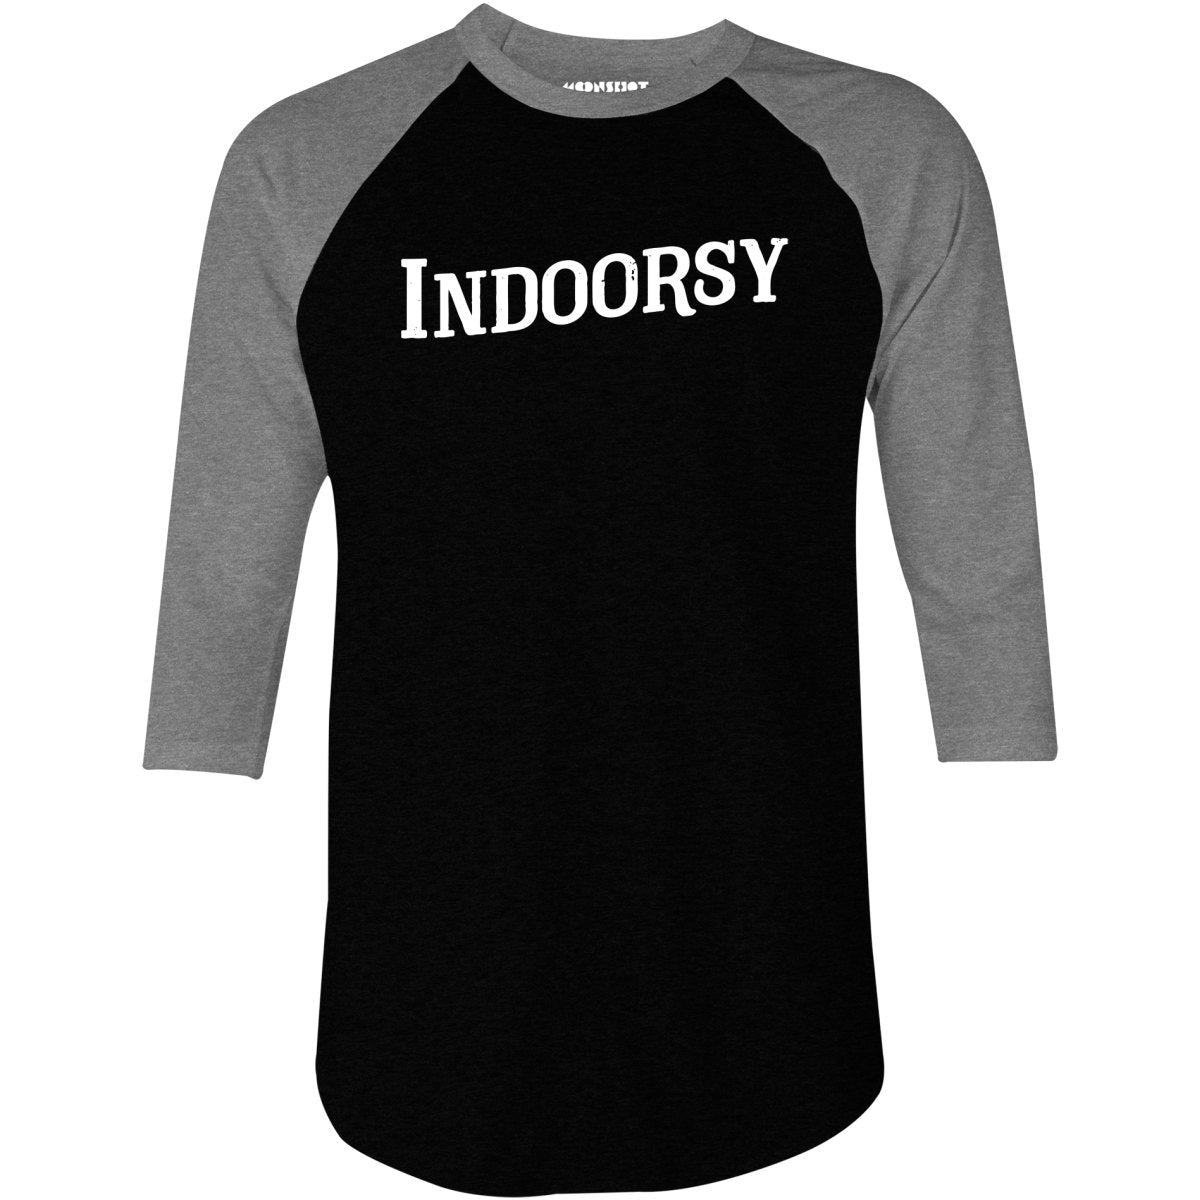 Indoorsy - 3/4 Sleeve Raglan T-Shirt